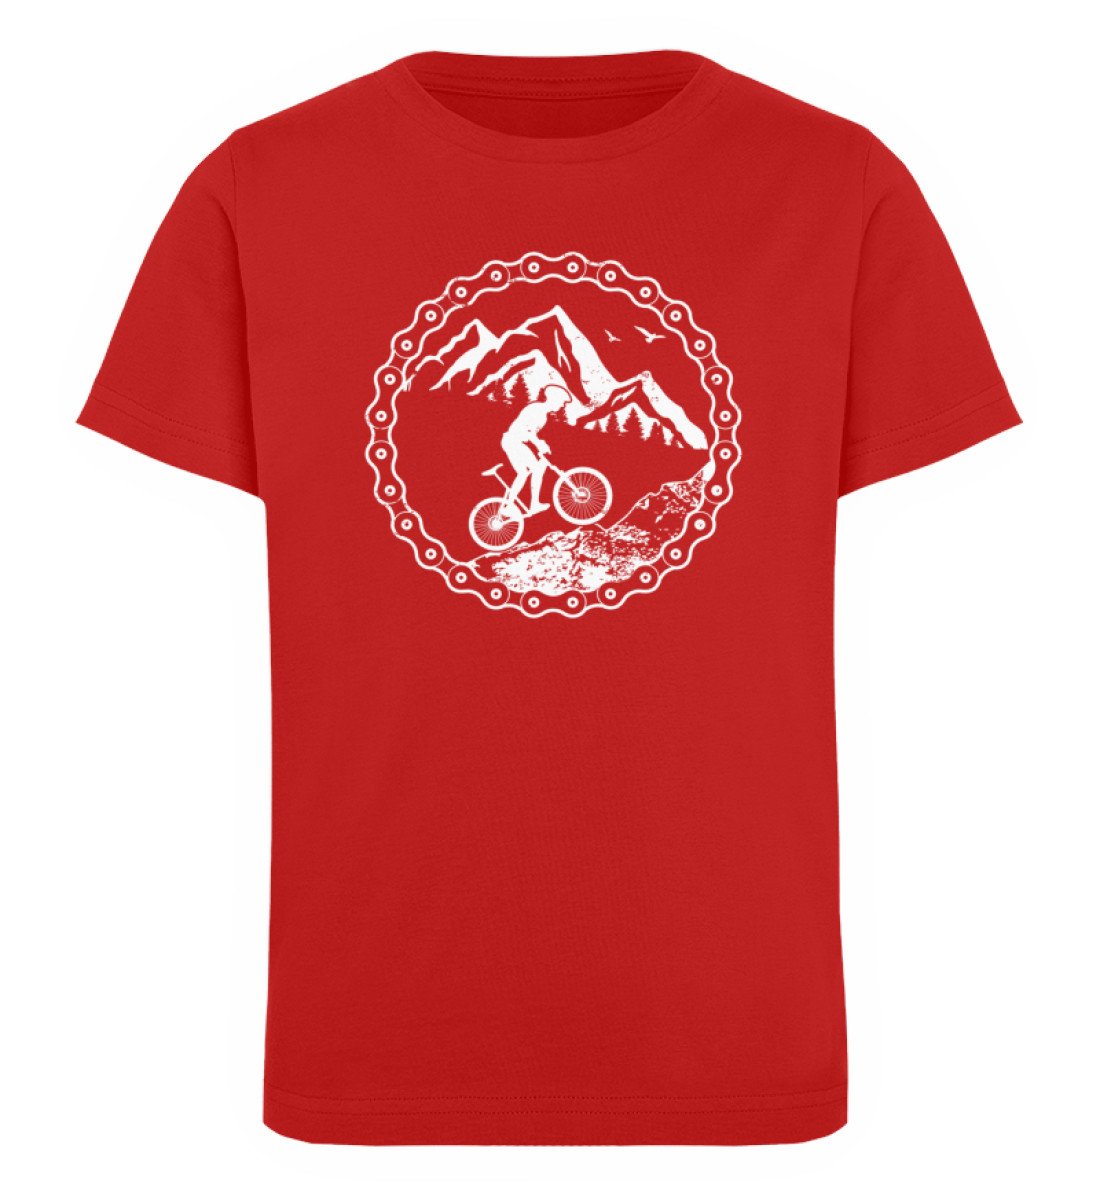 Uphill Mountainbiken - Kinder Premium Organic T-Shirt Rot